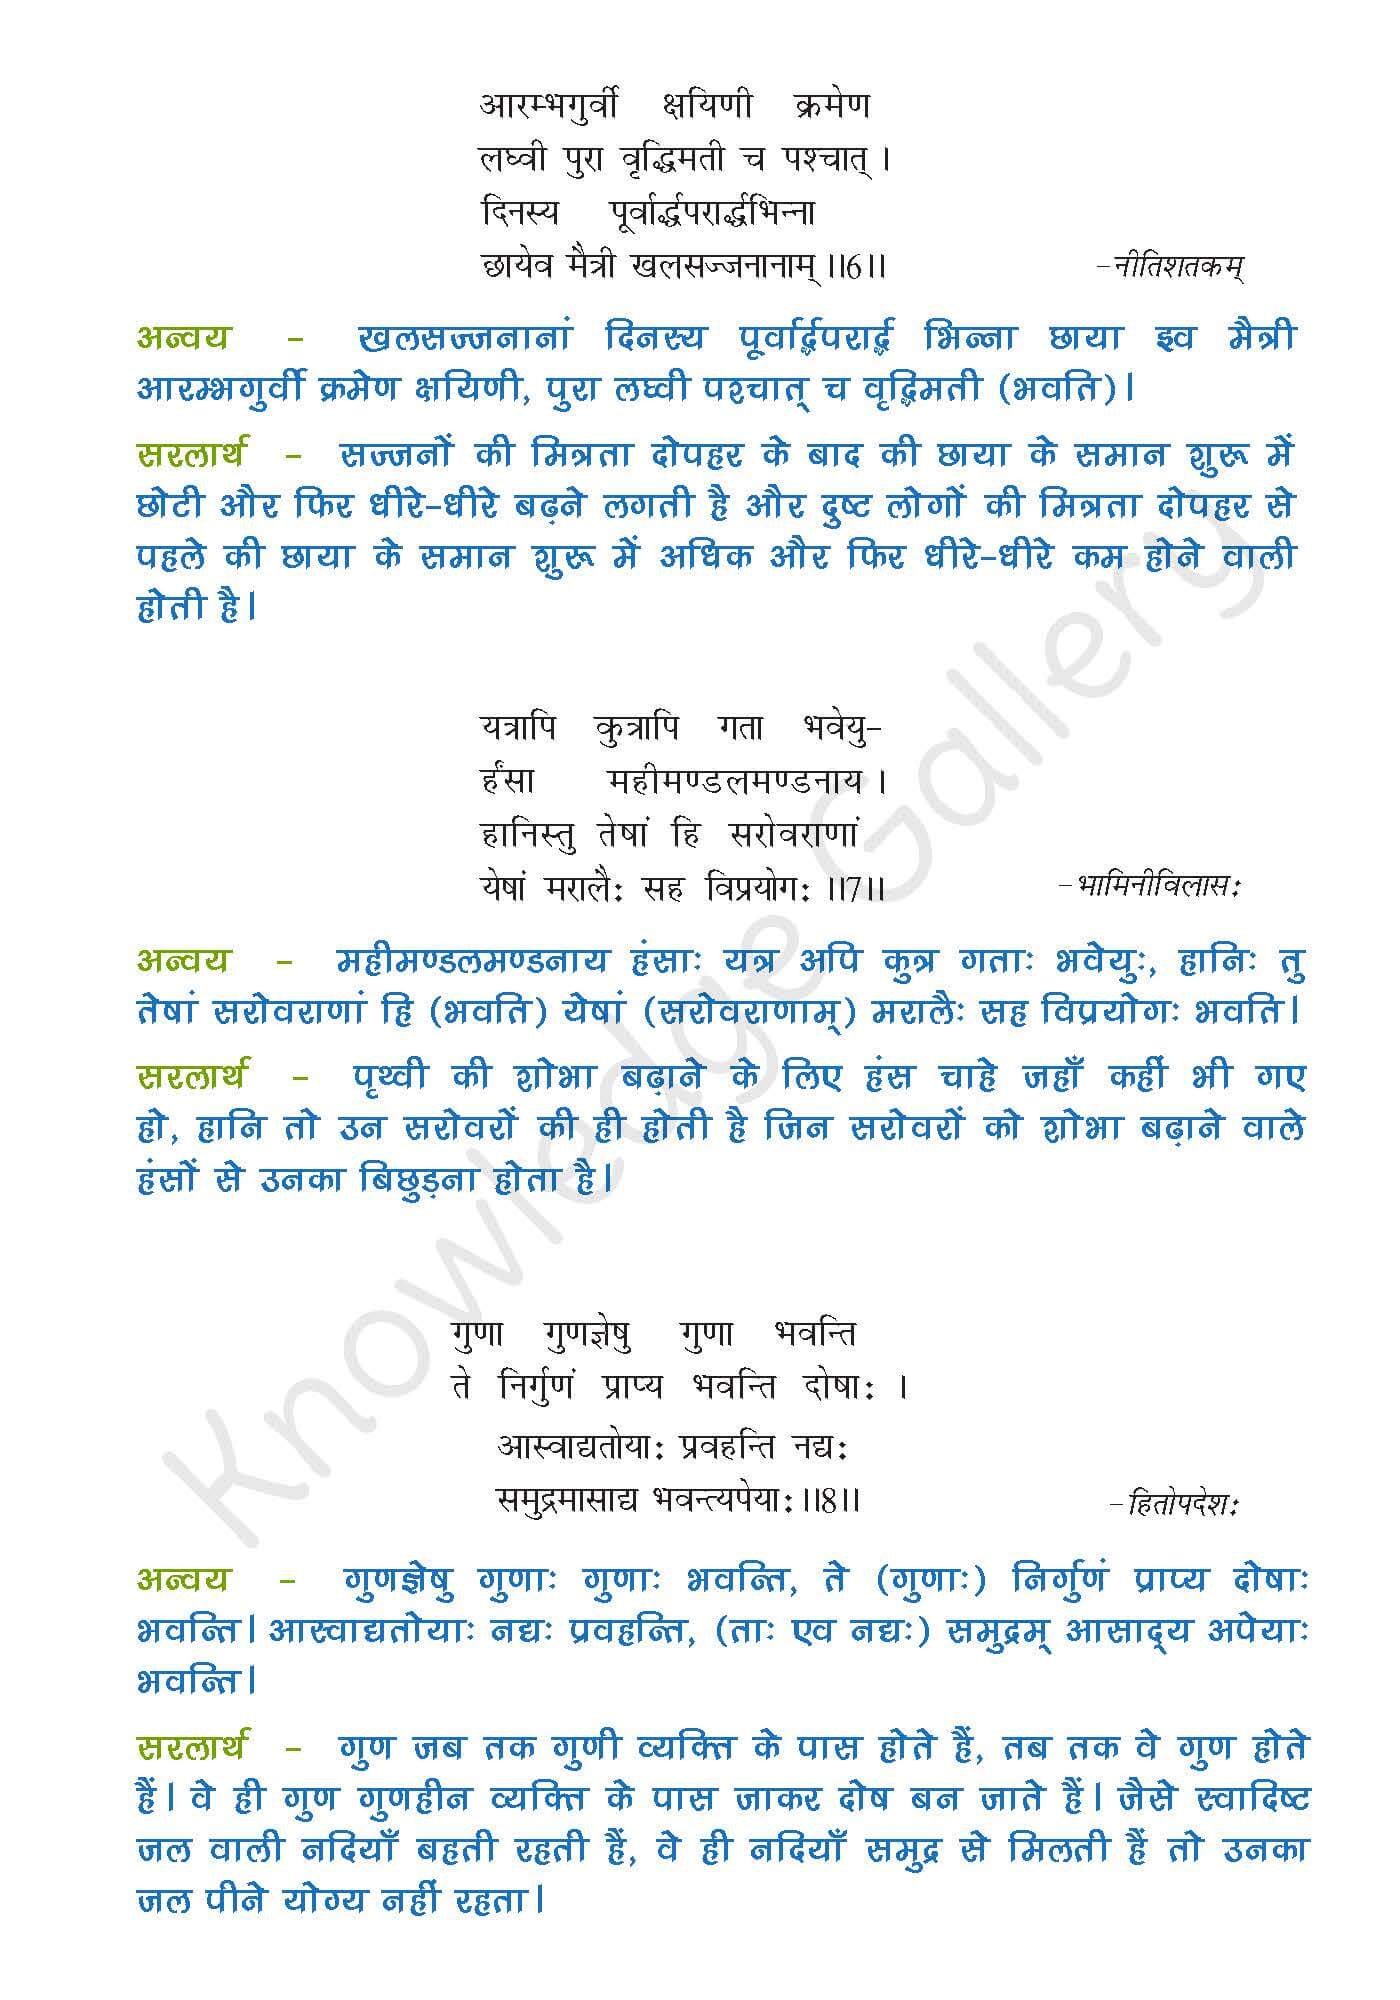 NCERT Solution For Class 9 Sanskrit Chapter 4 part 3